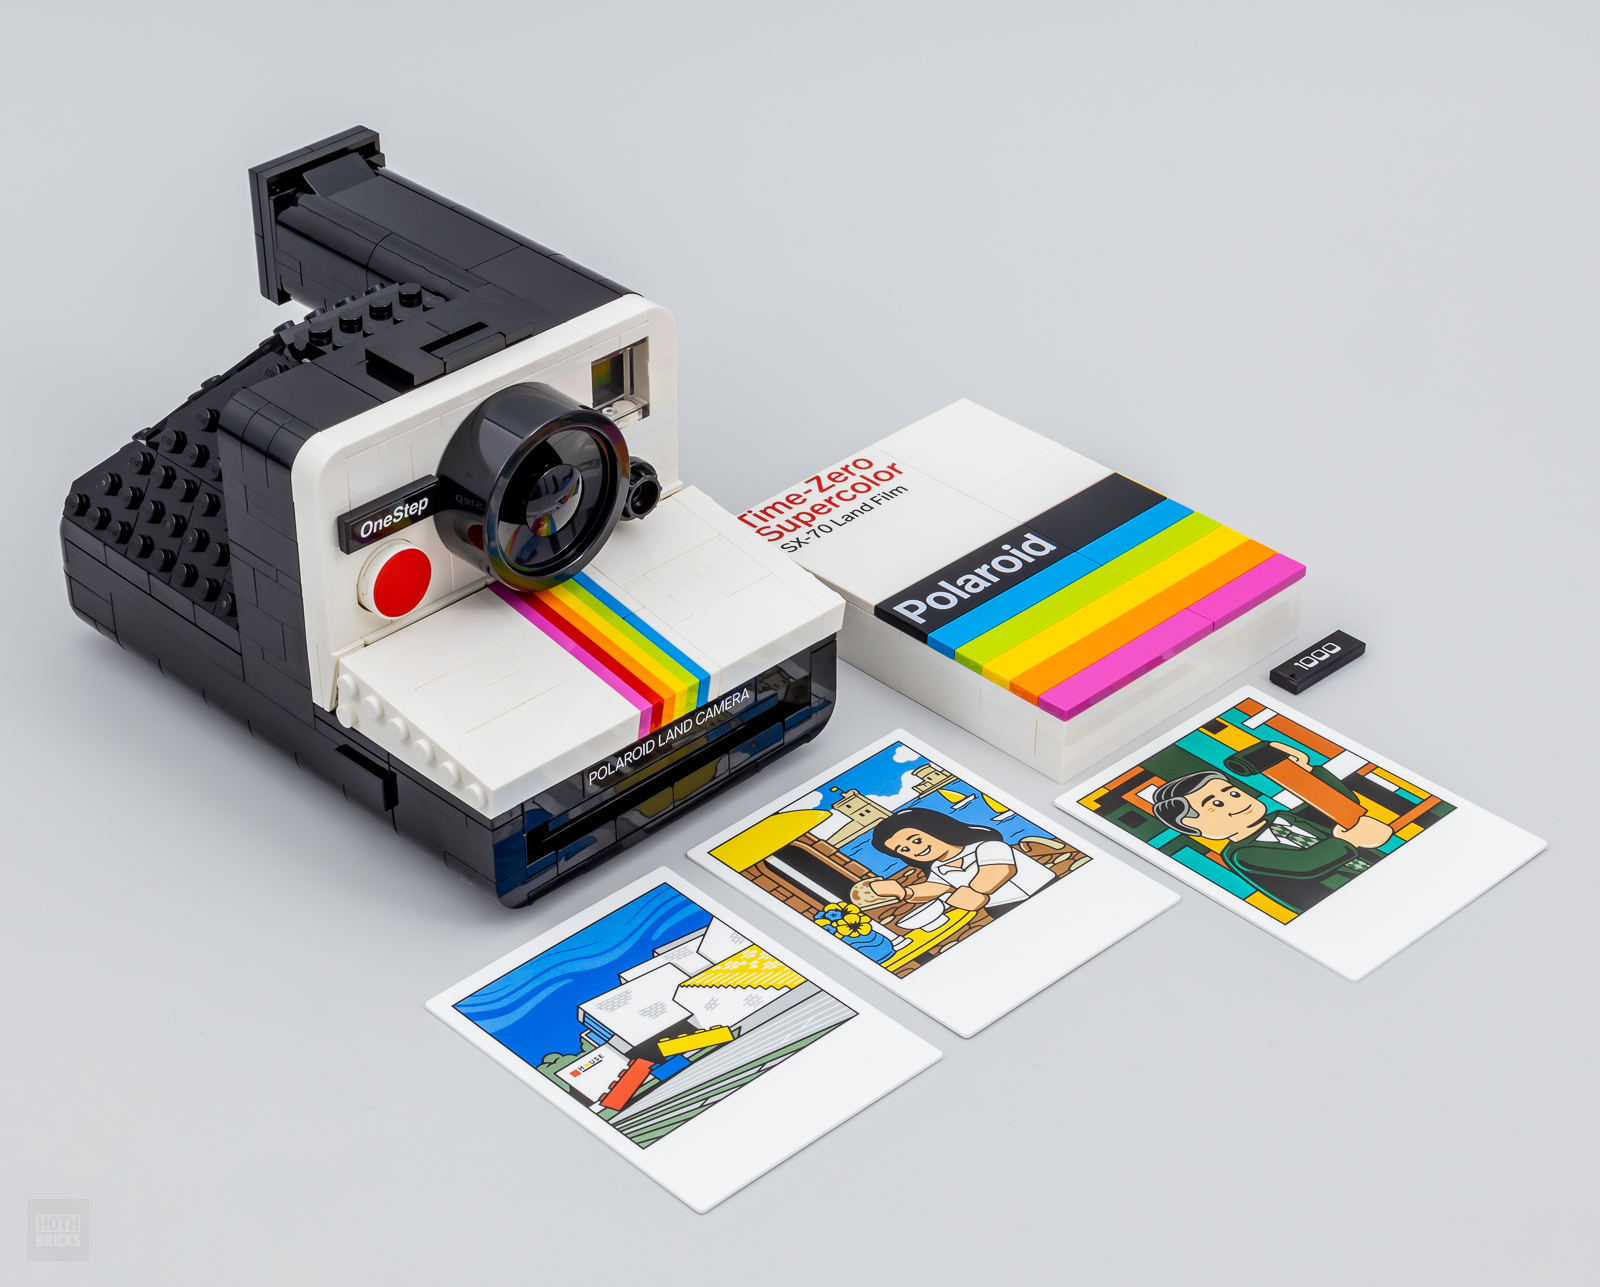 Appareil photo Polaroid : lequel choisir pour créer des souvenirs ?